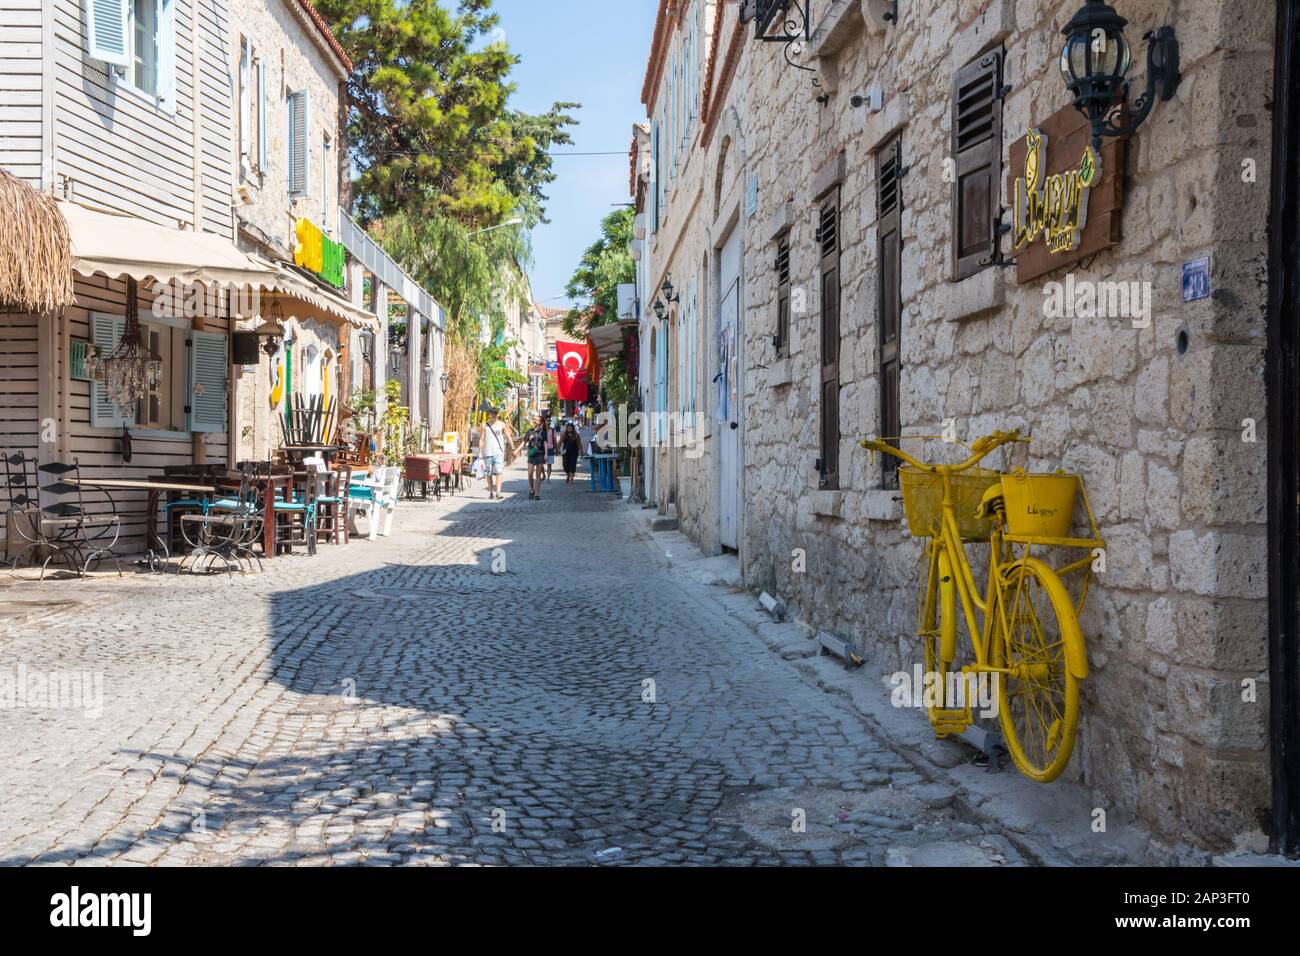 Cesme, Turquie - 6 septembre 2019 : les gens marcher dans une rue pavée et yellow bicycle. De nombreux touristes visitent la ville. Banque D'Images